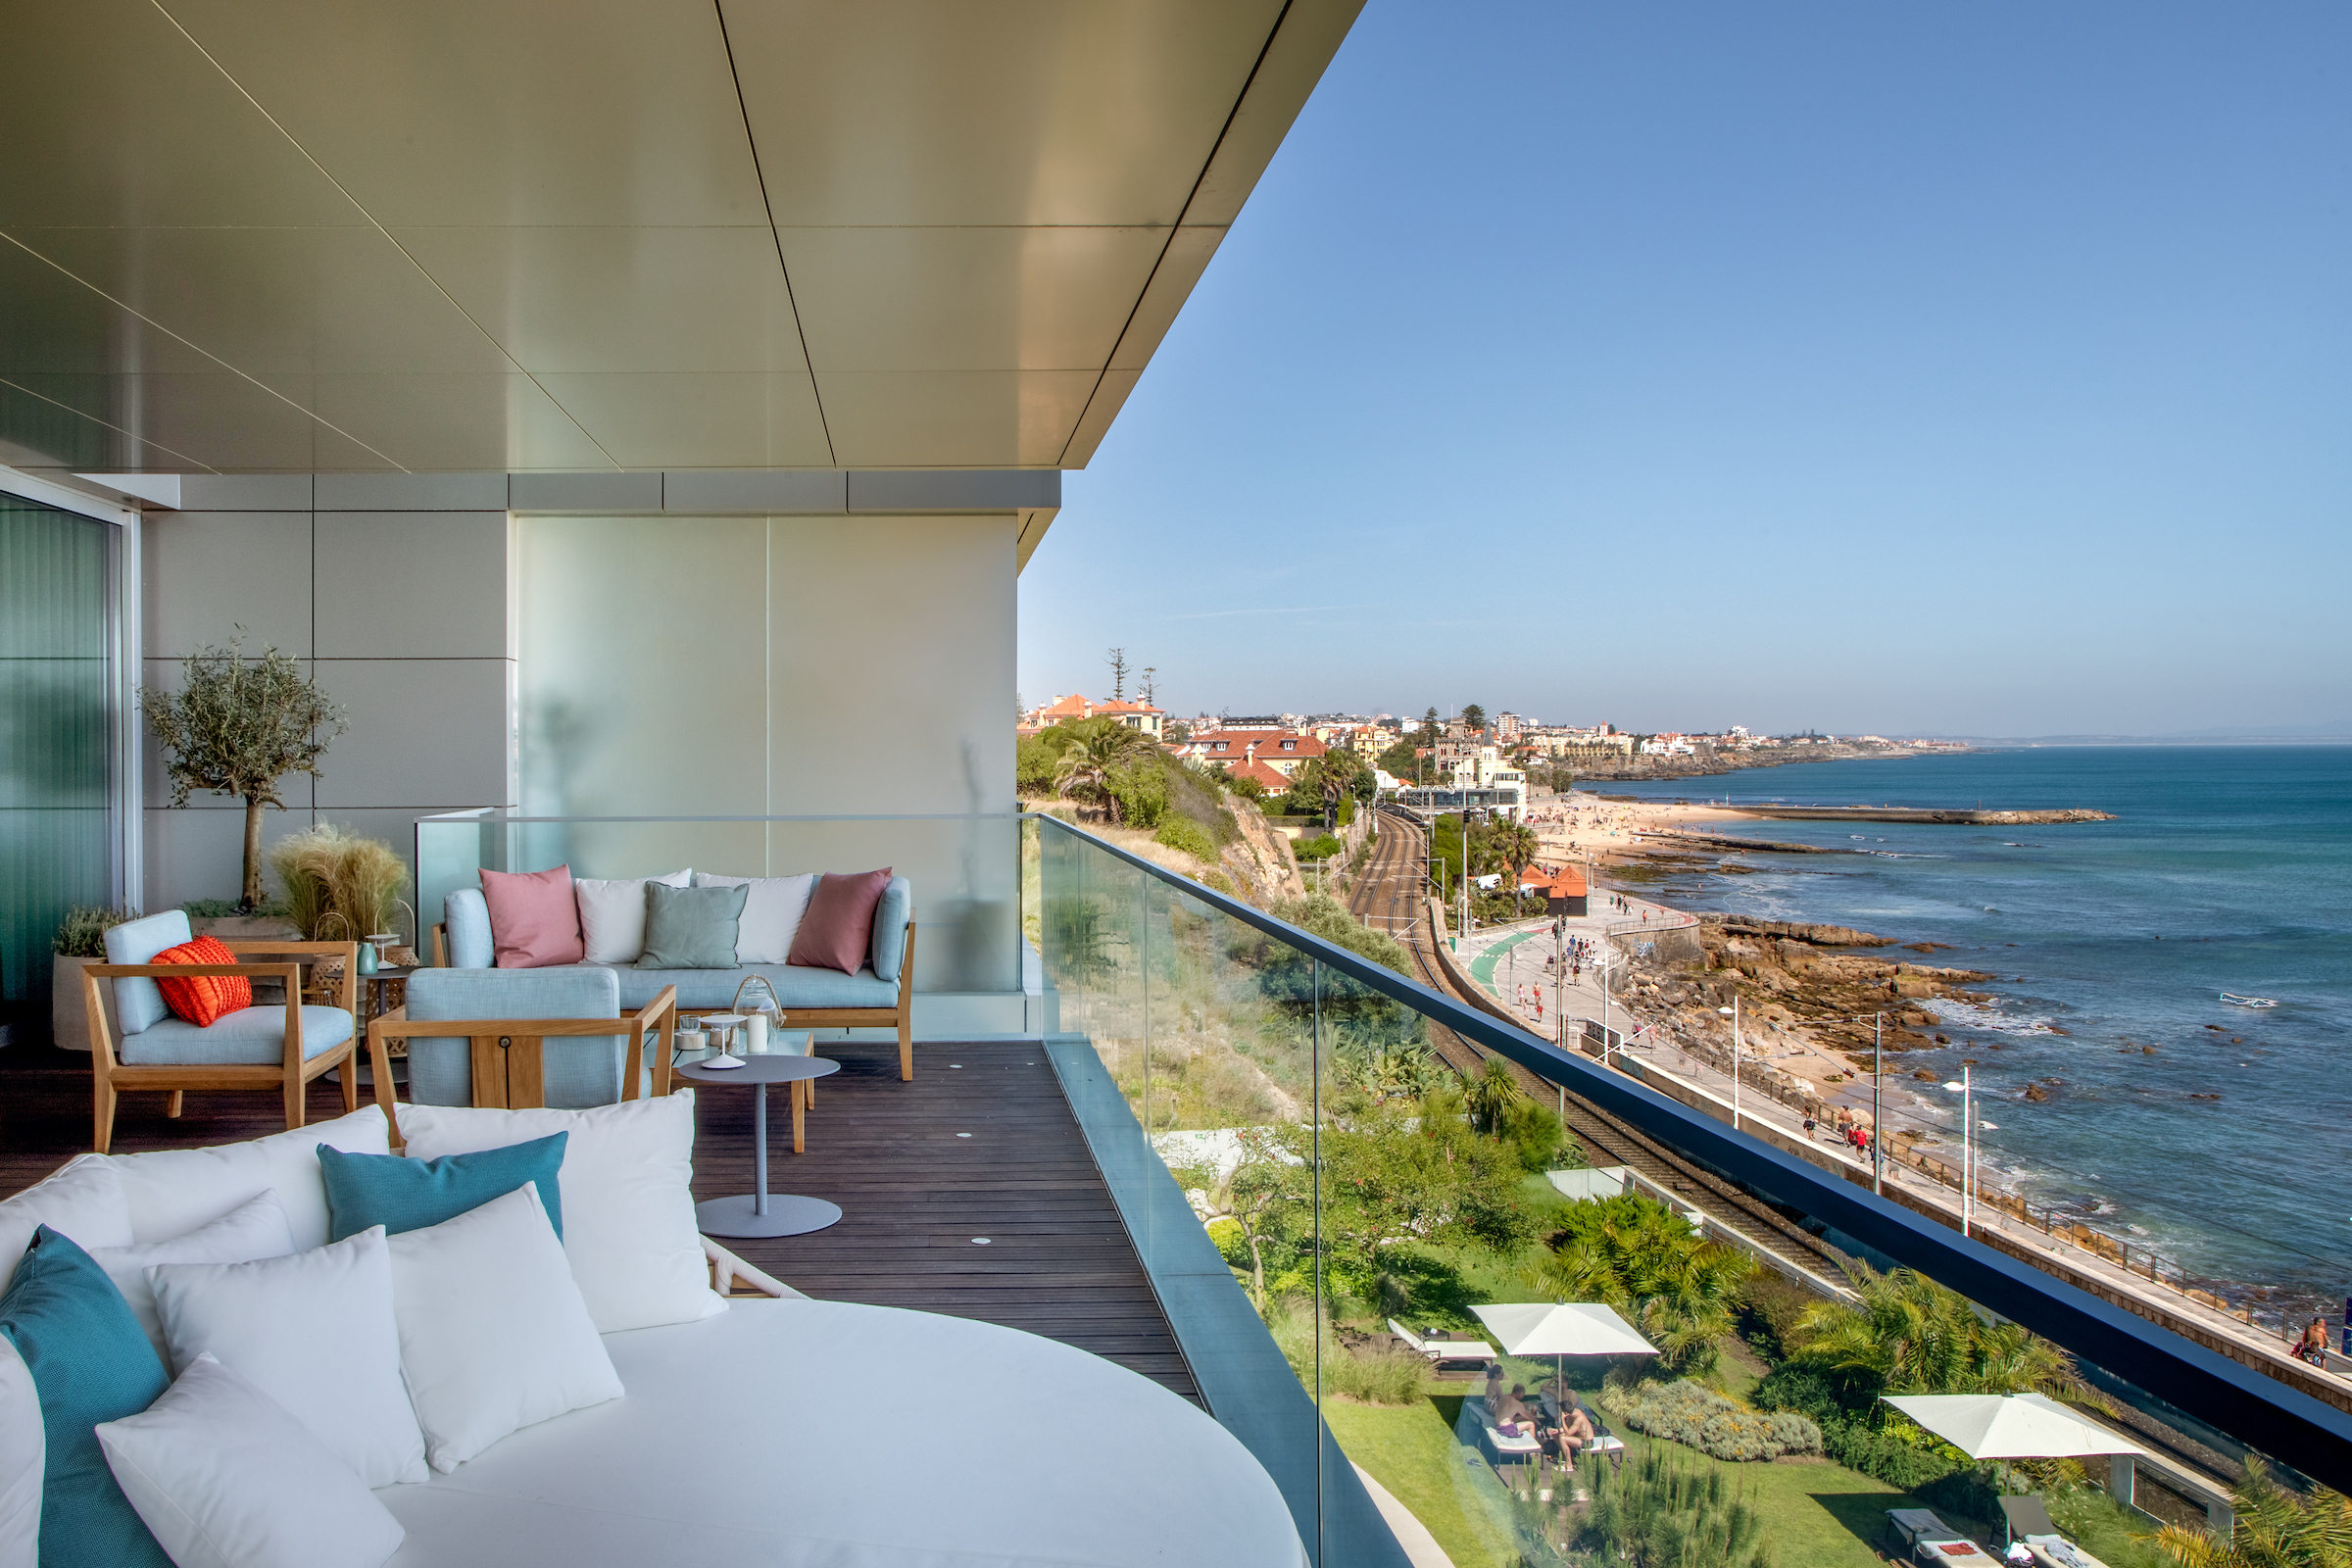 Apartamento projetado por Andrea Chicharo no Monte Estoril, em Portugal